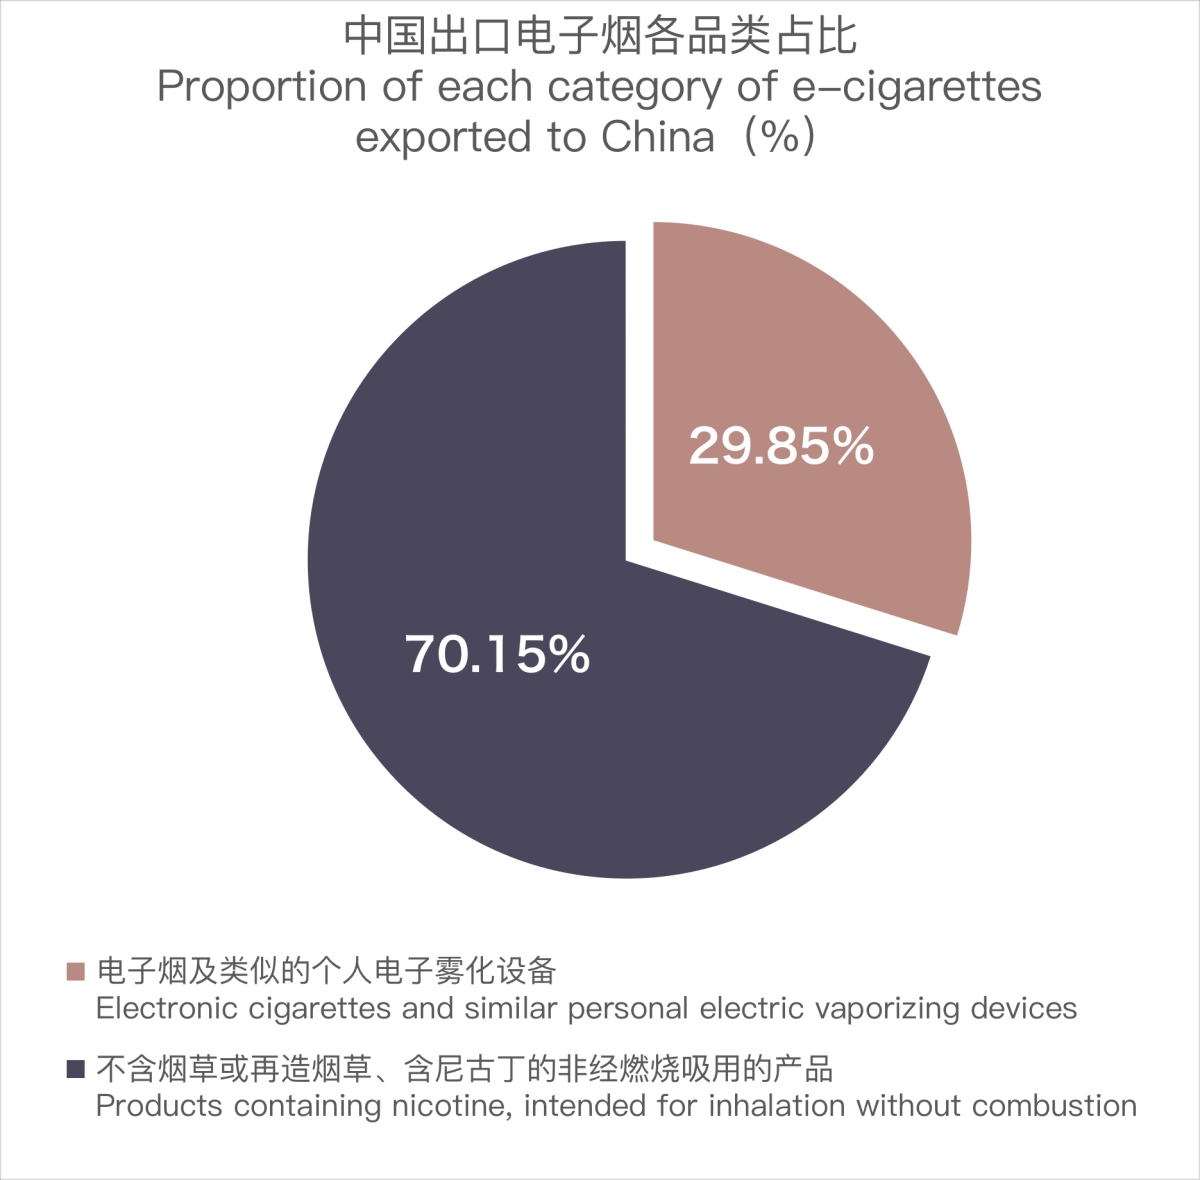 12月中国出口西班牙电子烟约754万美元 环比增长11%